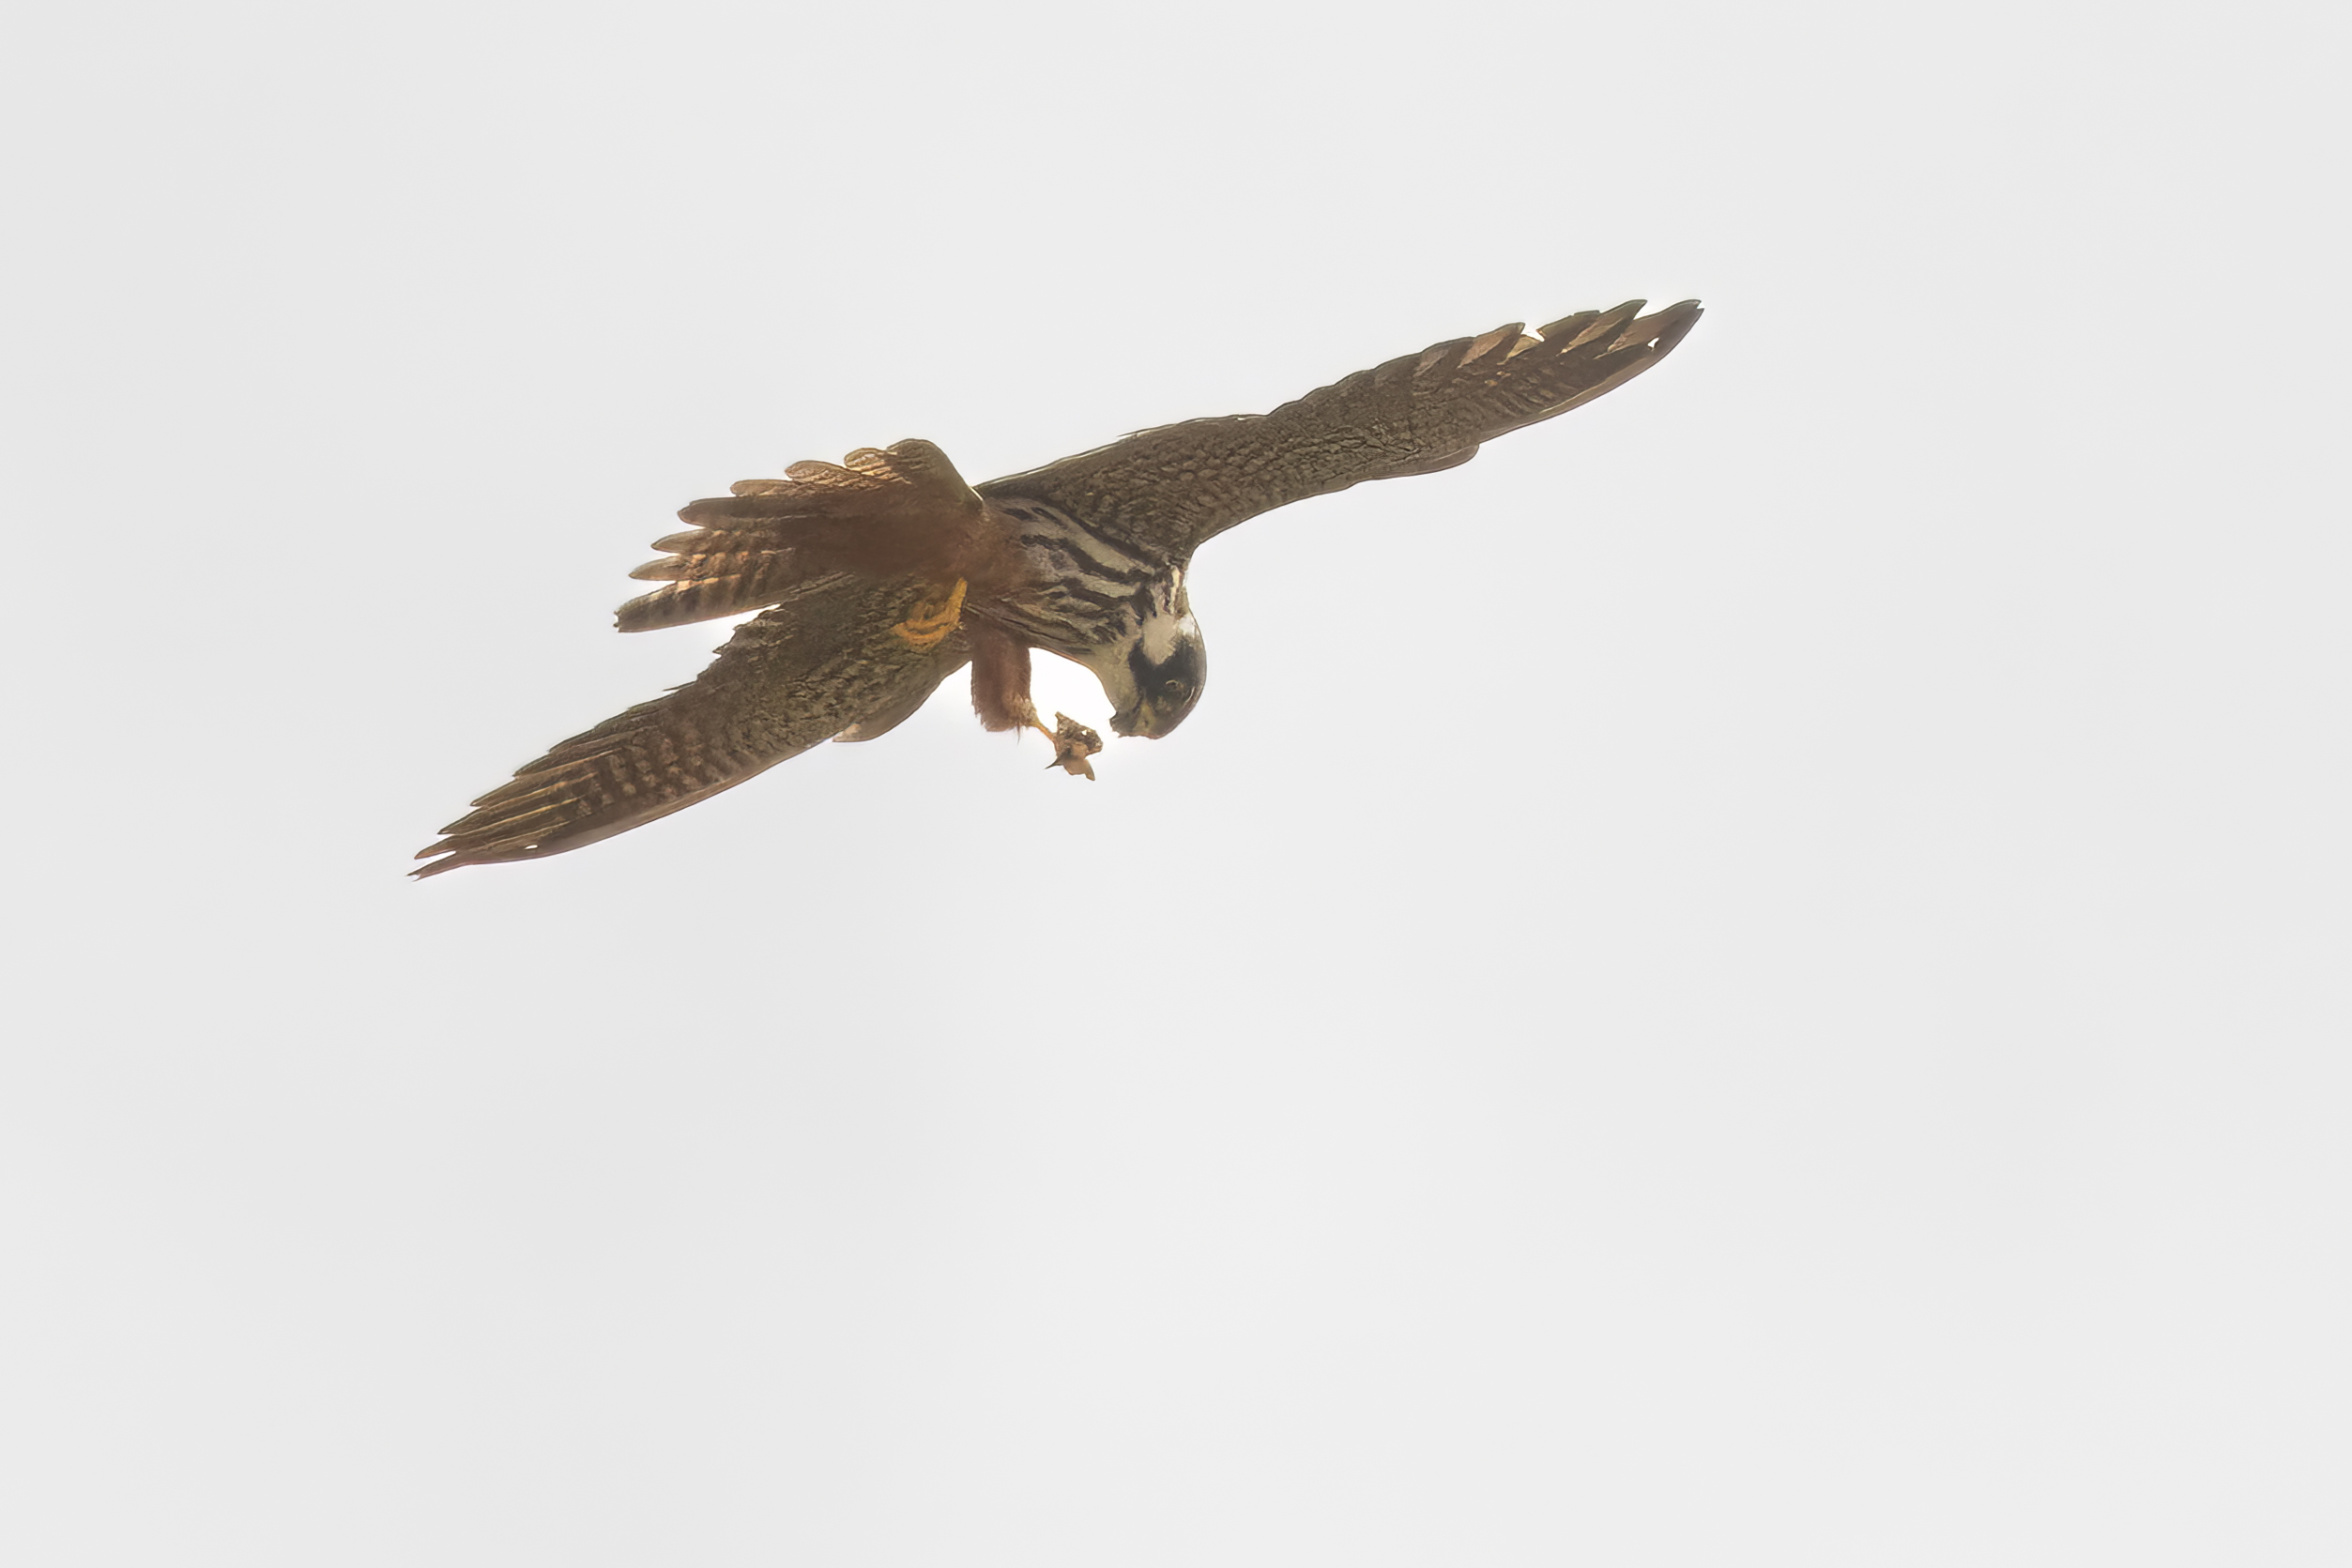 Boomval mannetje in vlucht met in zijn poot een motje die hij tijdens het vliegen oppeuzelt.